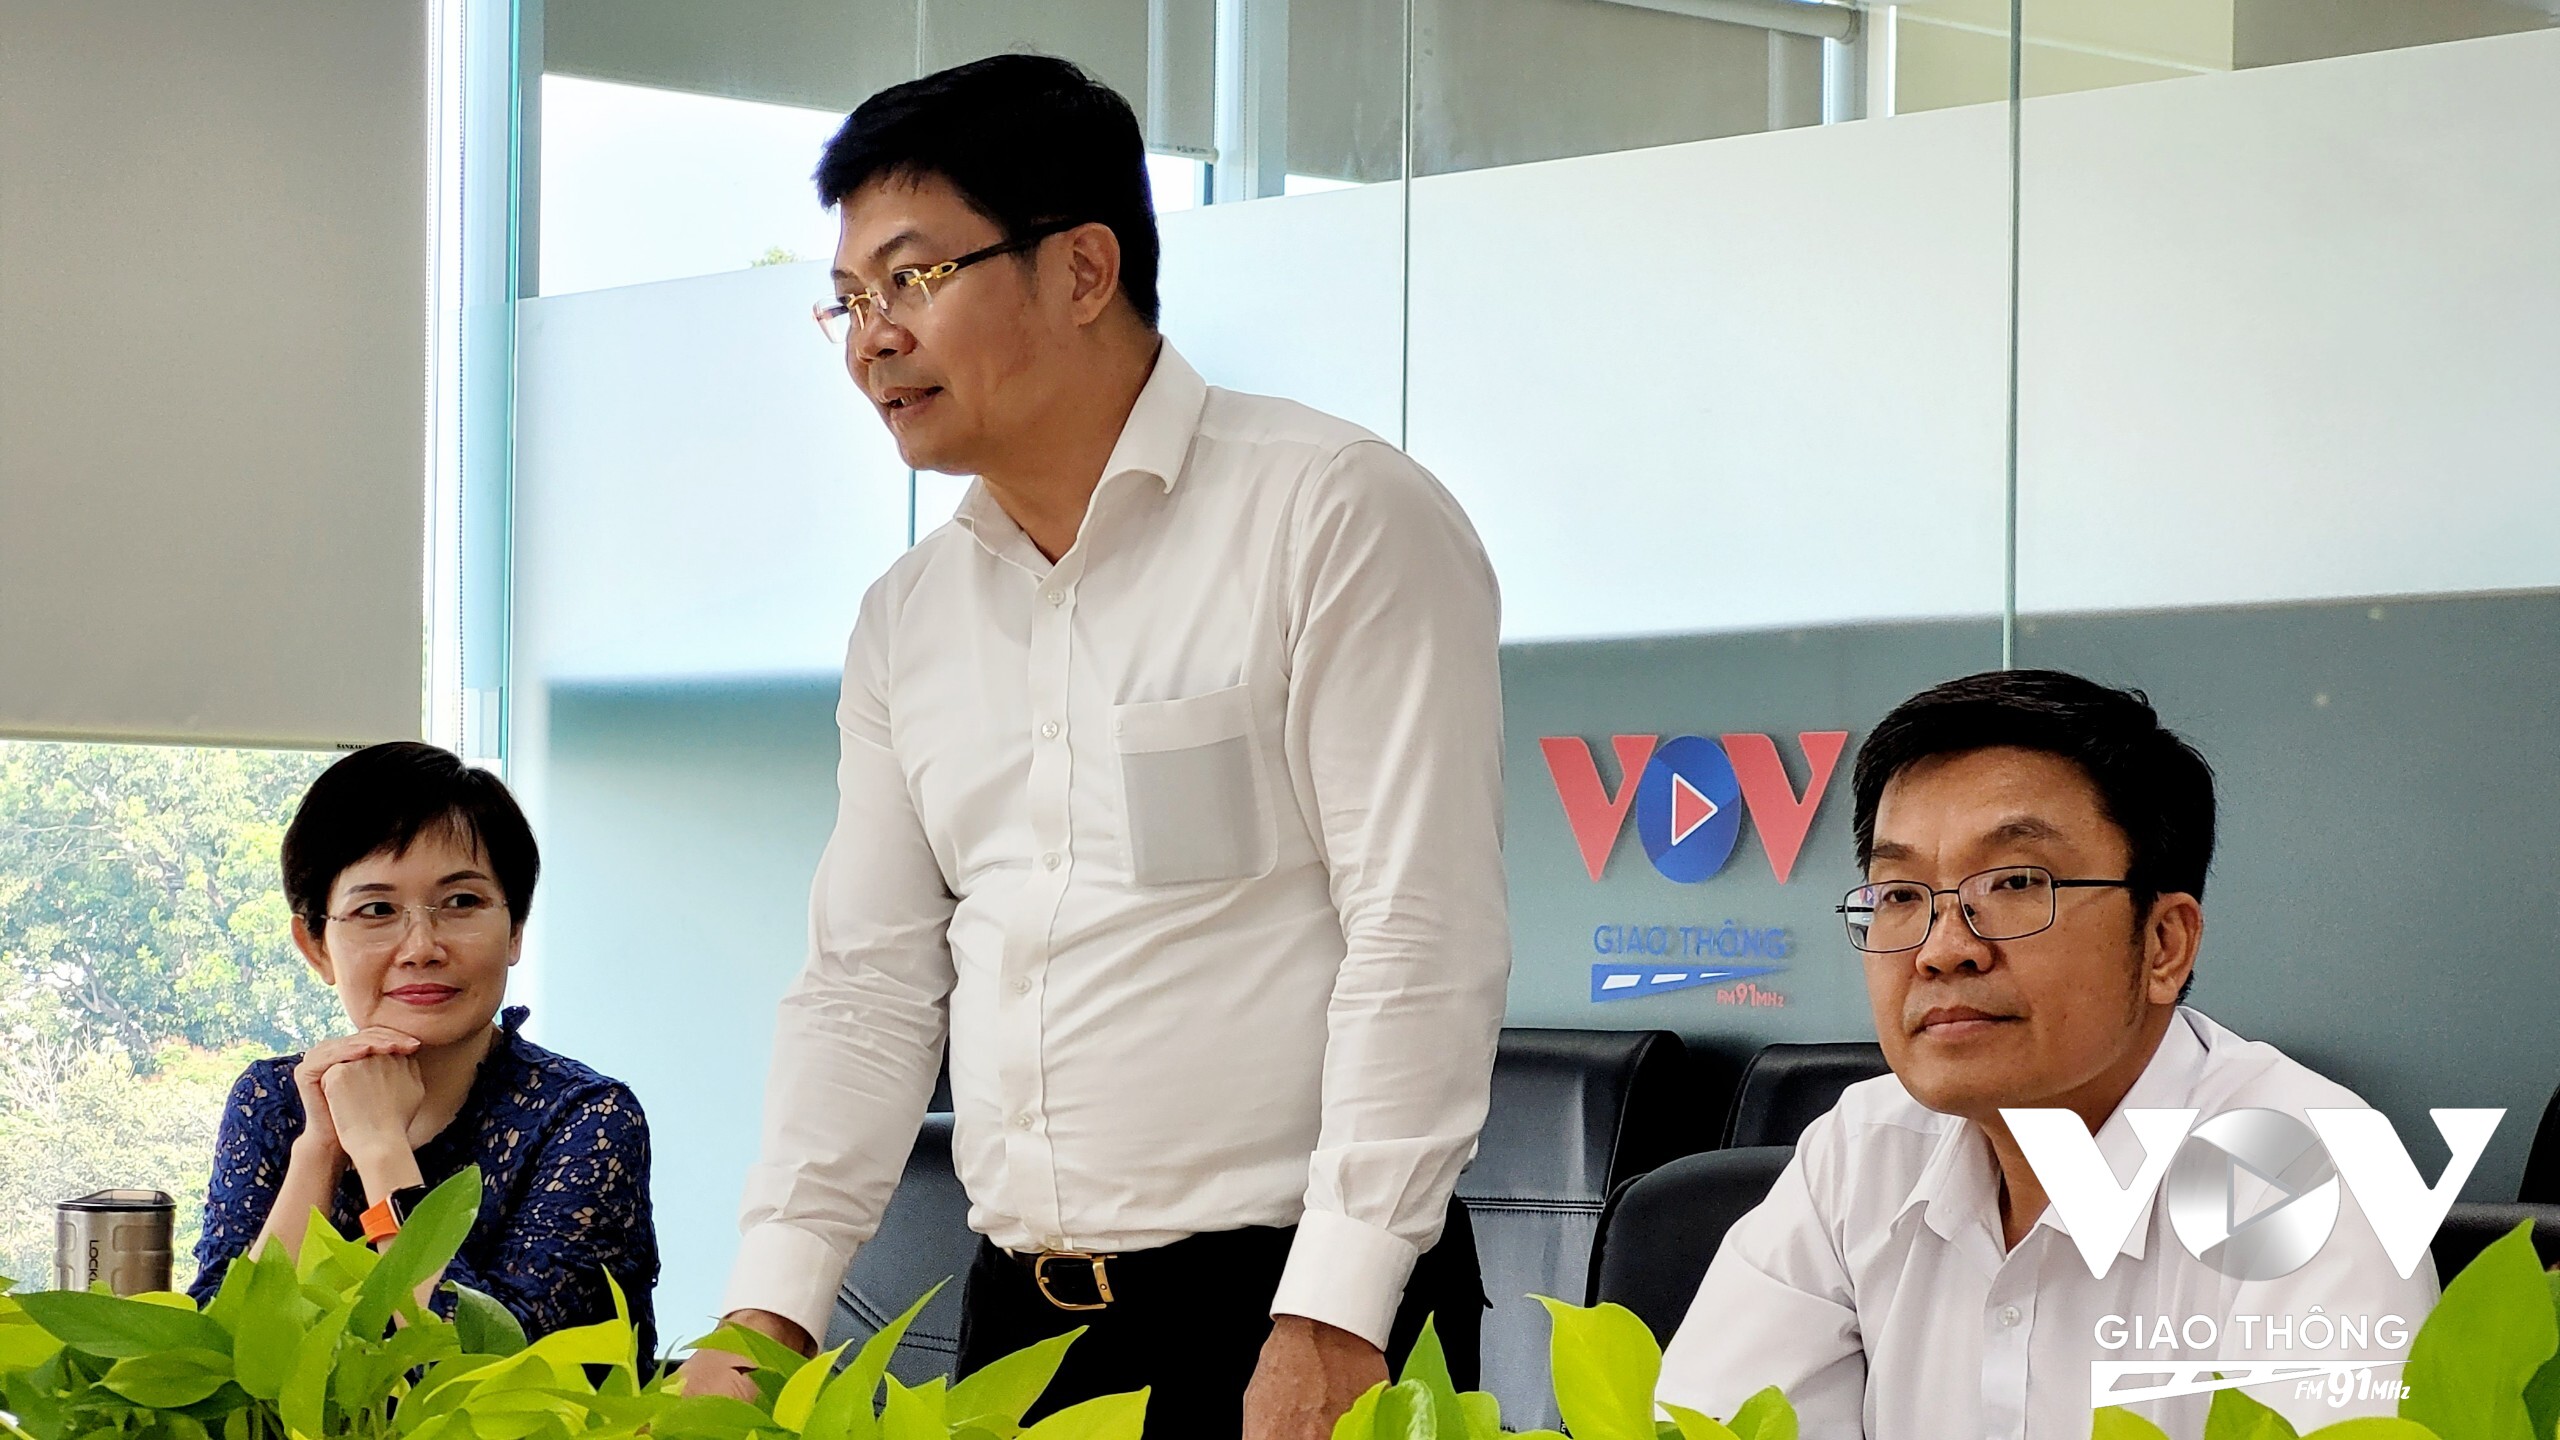 Ông Nguyễn Thành Lợi, Phó Trưởng Ban chuyên trách Ban An toàn giao thông TP.HCM đánh giá cao hiệu quả của Kênh VOV Giao thông khu vực phía Nam trong việc góp phần thực hiện an toàn giao thông trên địa bàn Thành phố.